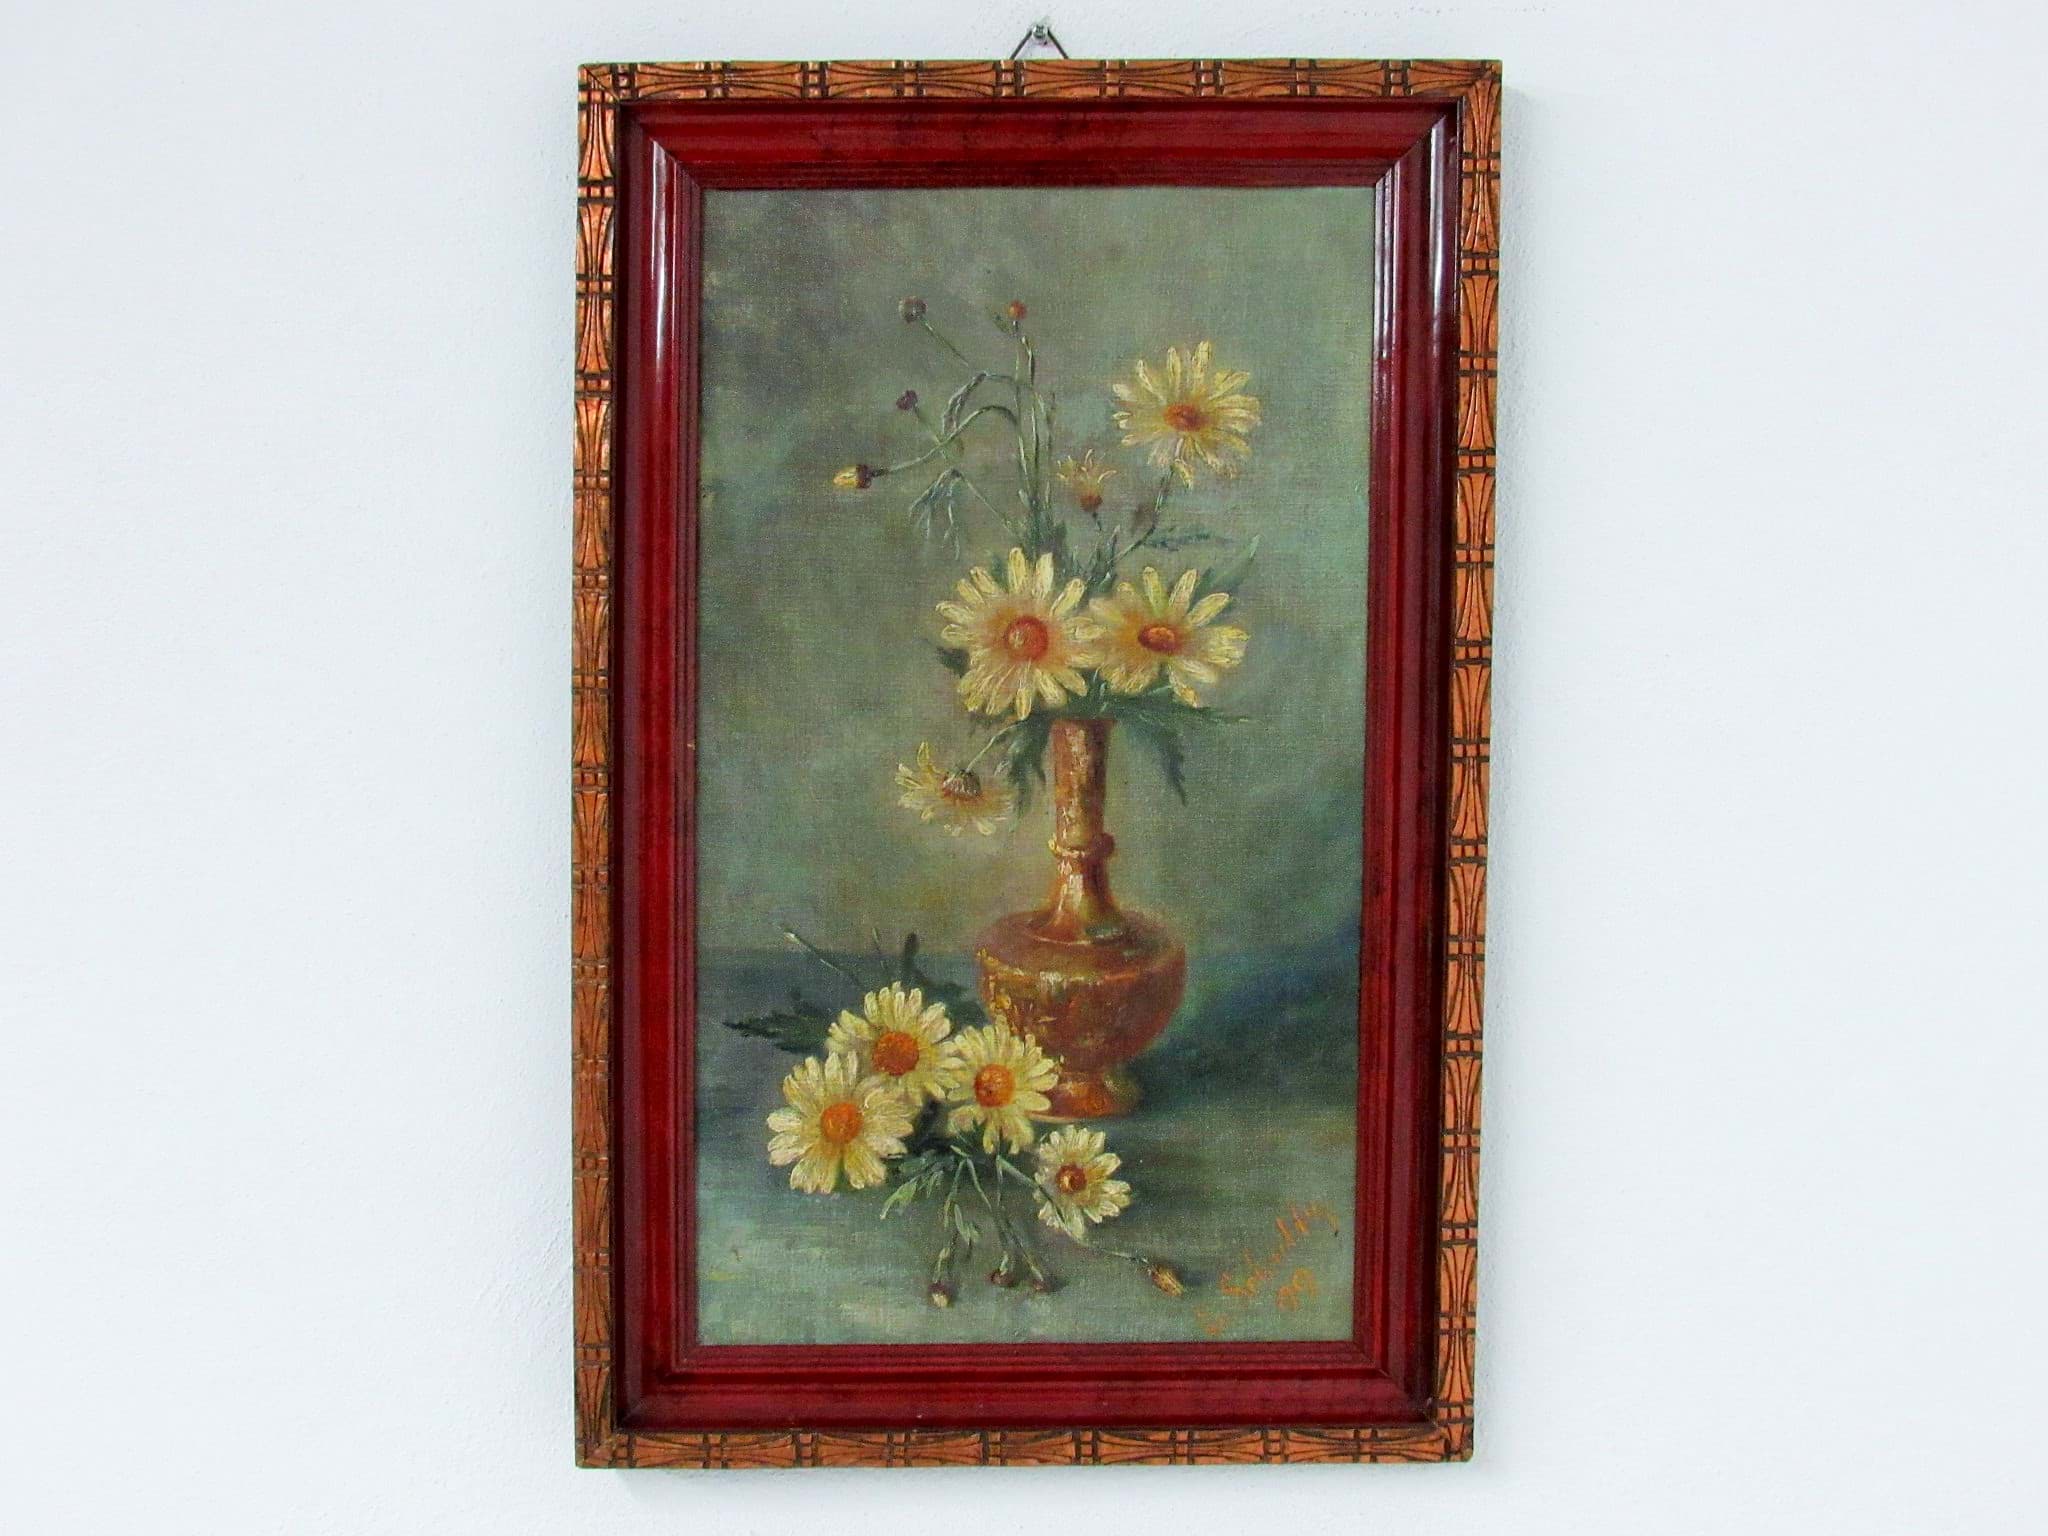 Picture of Antik Gemälde / Ölbild, Blumen Stillleben um 1900, Öl/Malkarton, gerahmt, signiert E. Schultz (?) & datiert